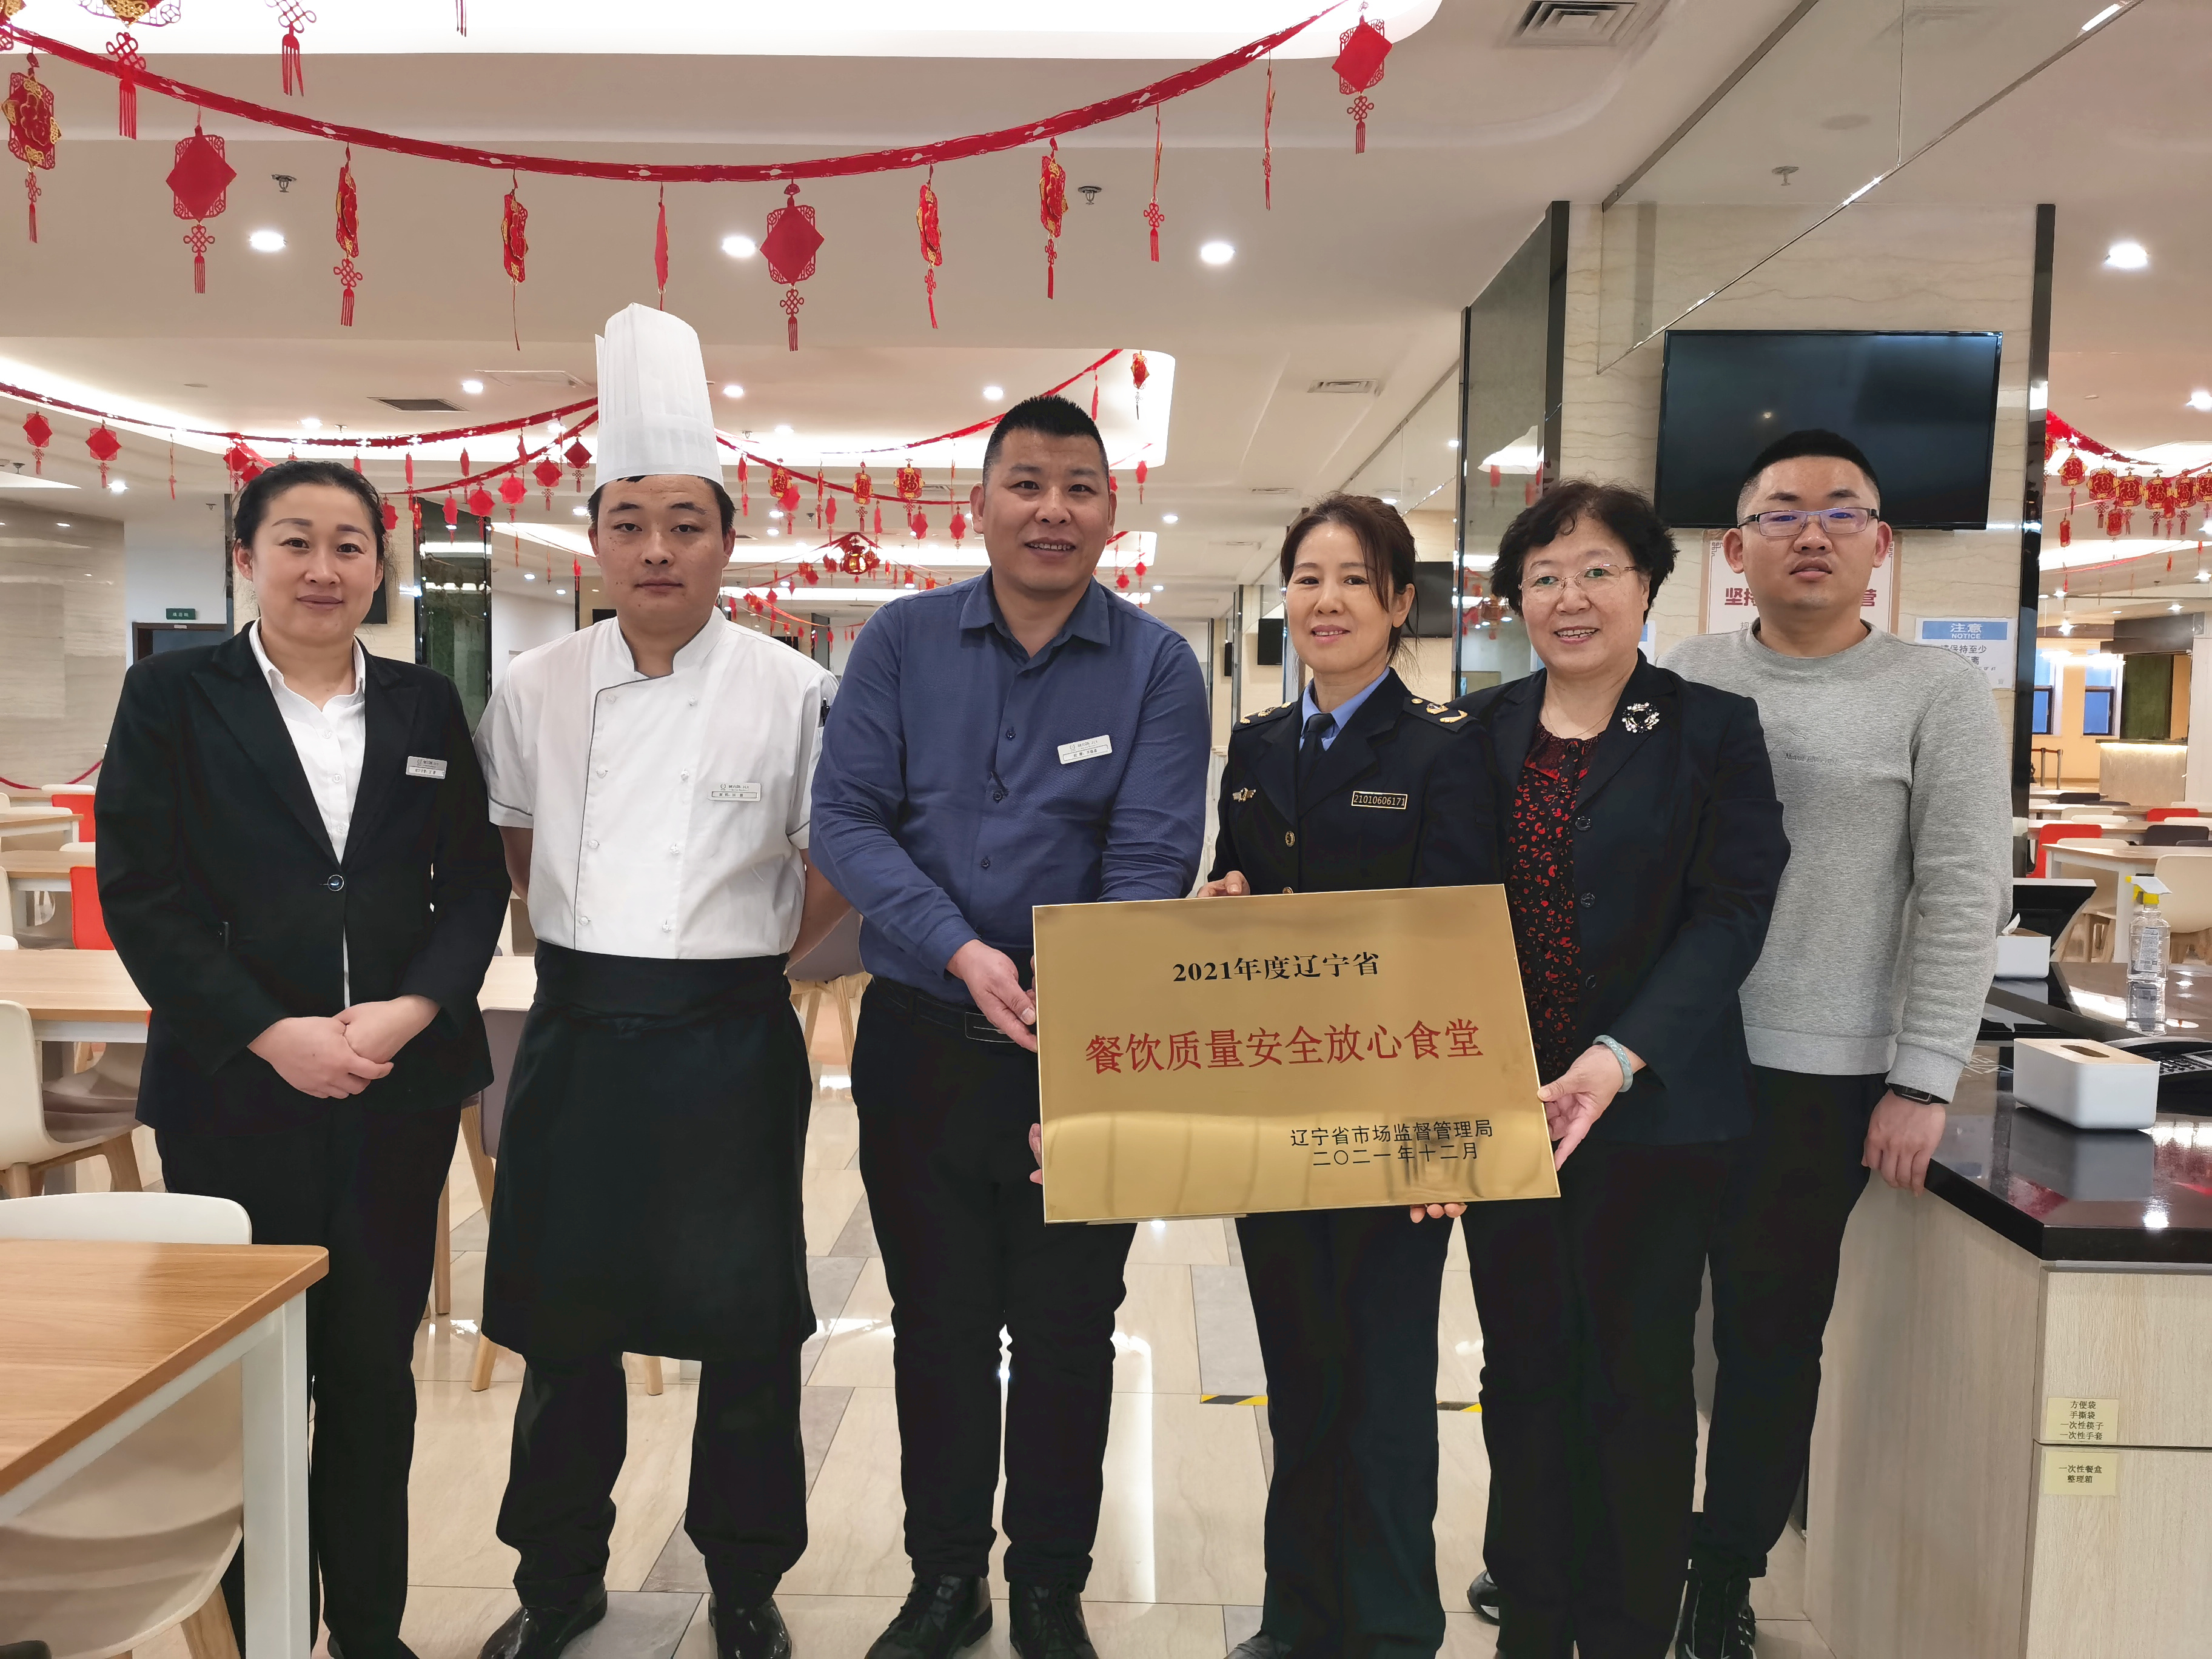 中国医科大学附属第一医院（浑南院区）餐厅被评为 “2021年度辽宁省餐饮质量安全放心食堂”